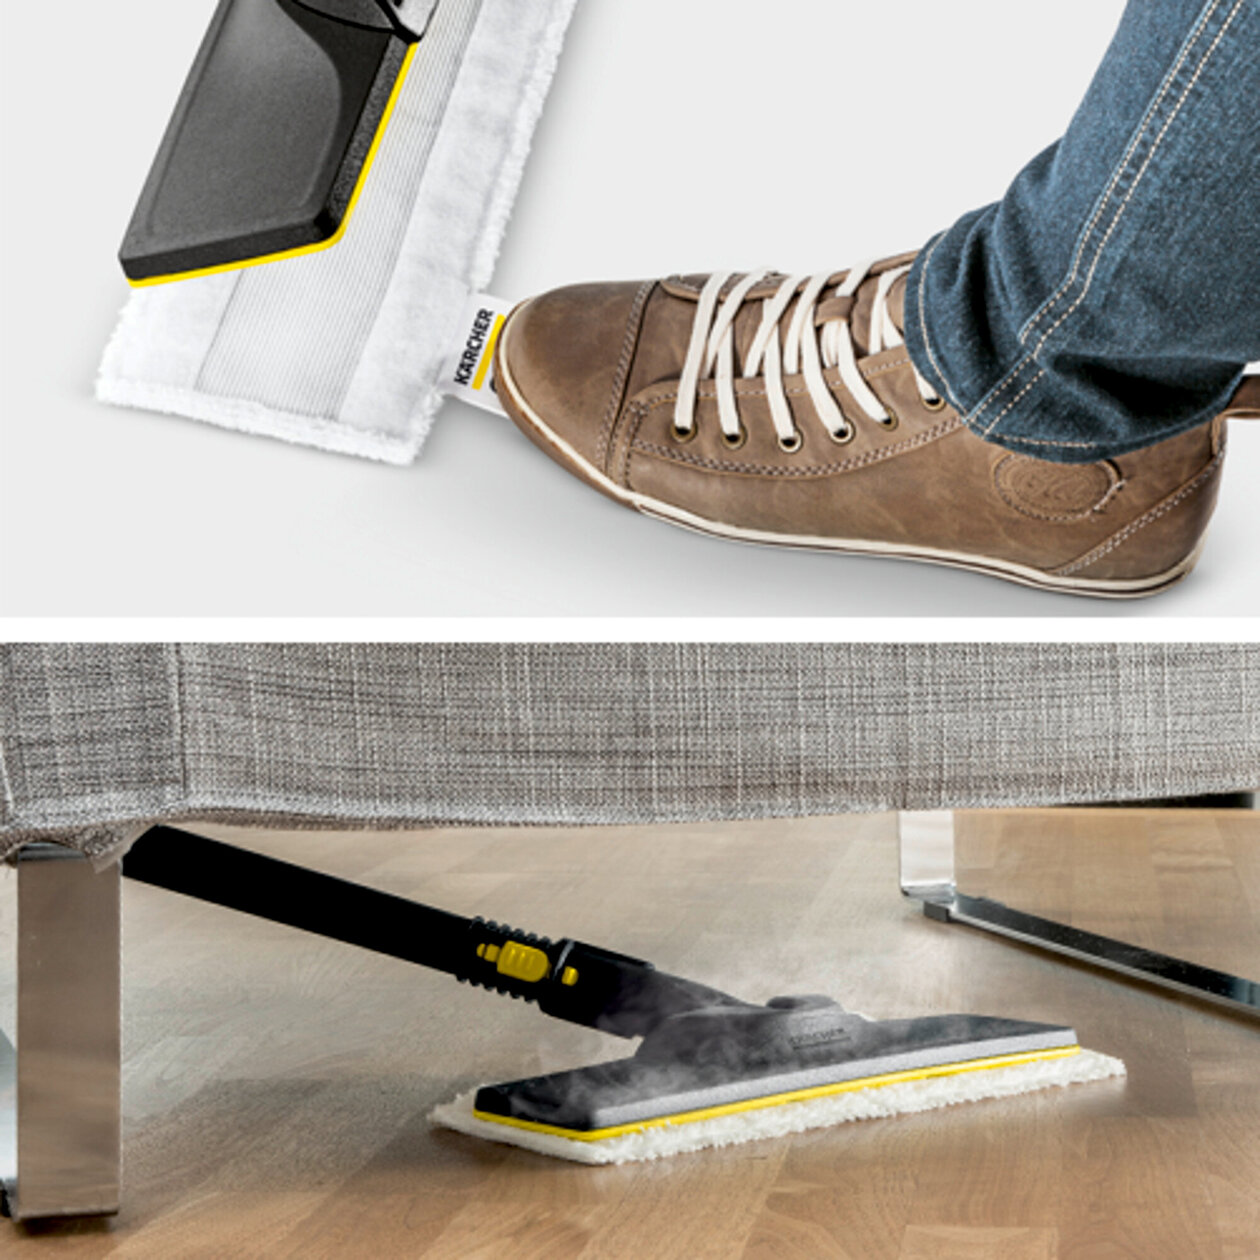  SC 4 EasyFix SK Set: Súprava na čistenie podlahy EasyFix s flexibilným kĺbom na podlahovej hubici a pohodlným suchým zipsom na upevnenie utierky na podlahu